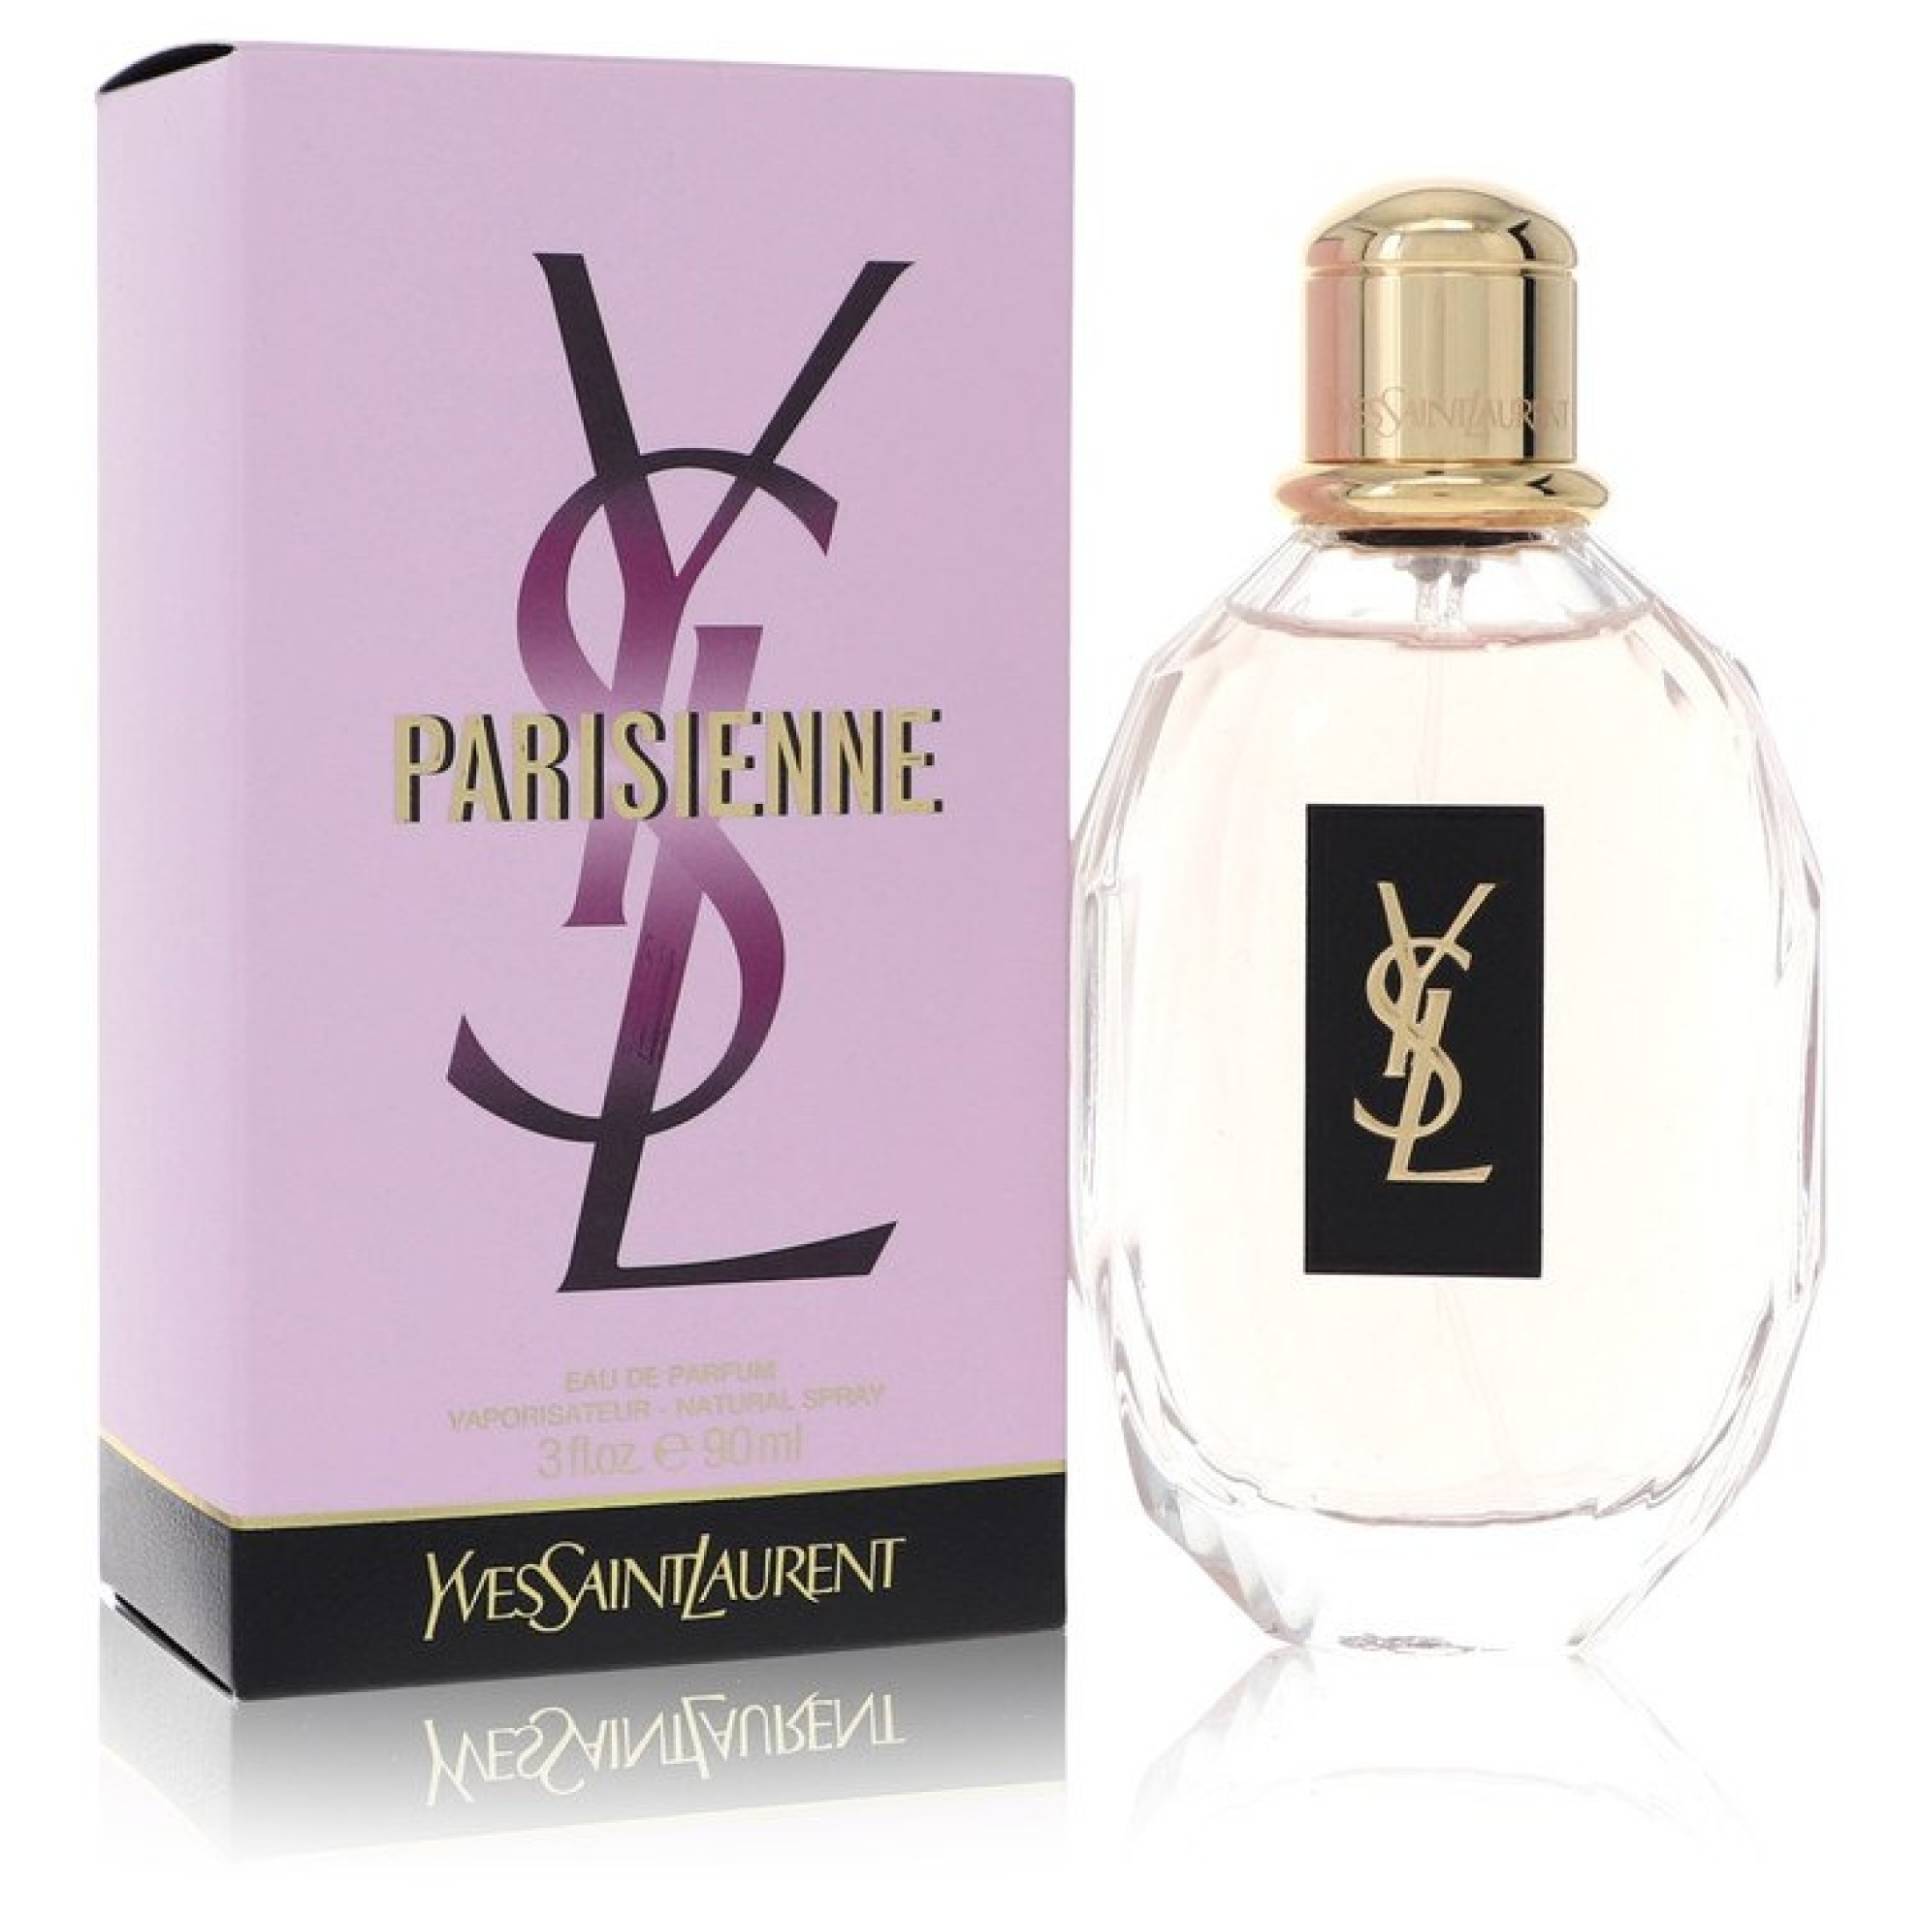 Yves Saint Laurent Parisienne Eau De Parfum Spray 90 ml von Yves Saint Laurent